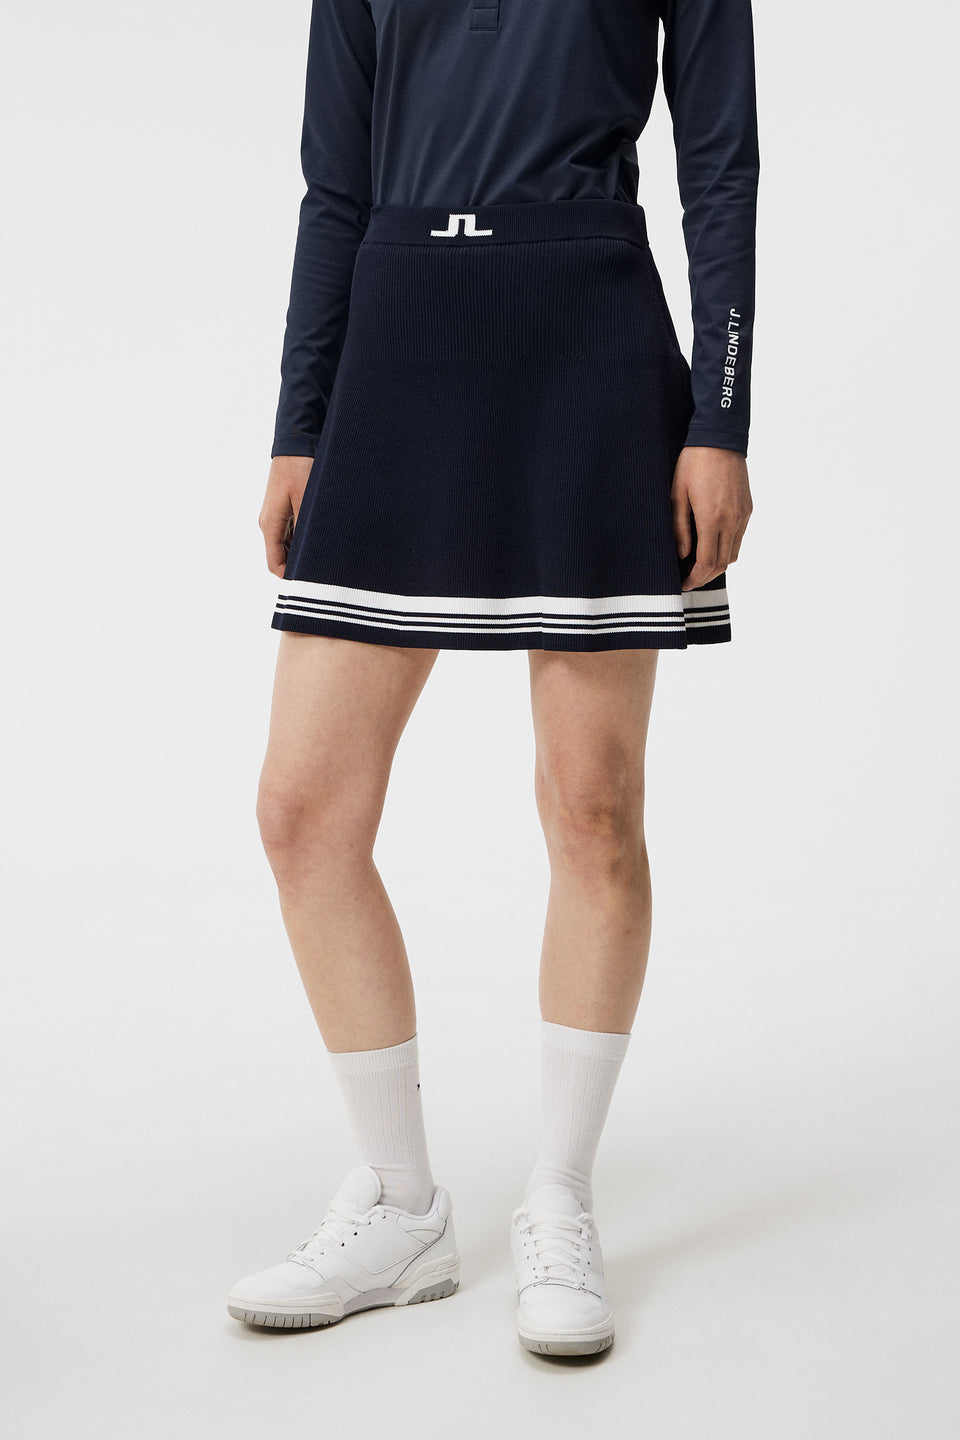 Frida Stripe Knitted Skirt / JL Navy